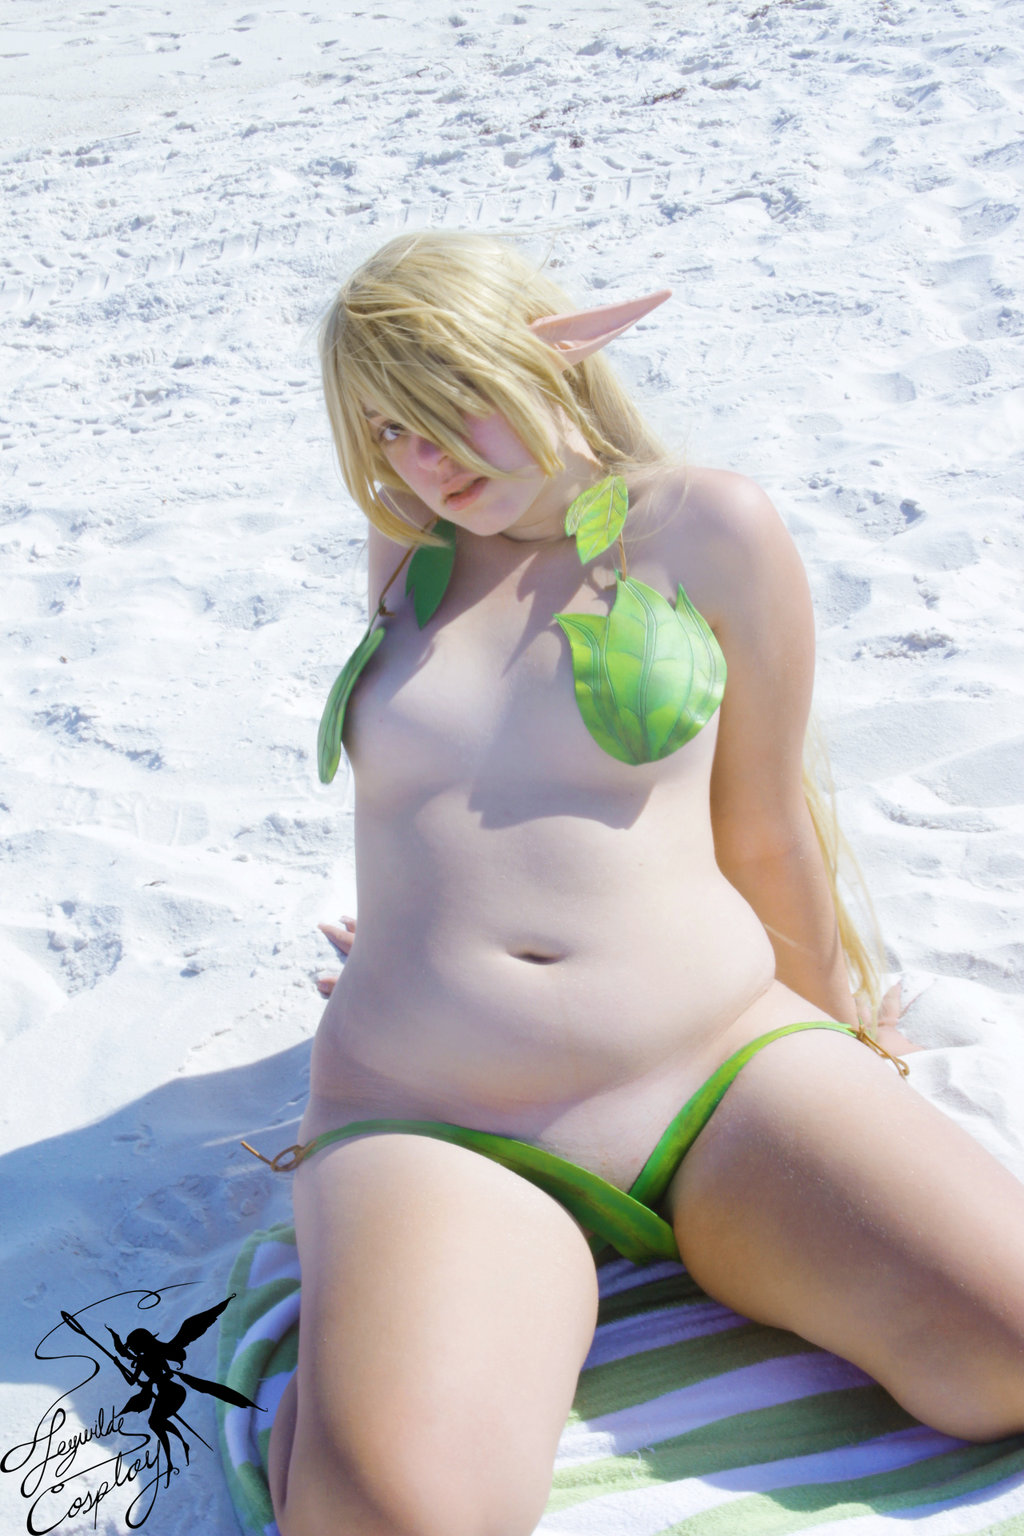 Chubby Girl Cosplay Chubby Blonde Cosplay Wearing Leaf Bikini